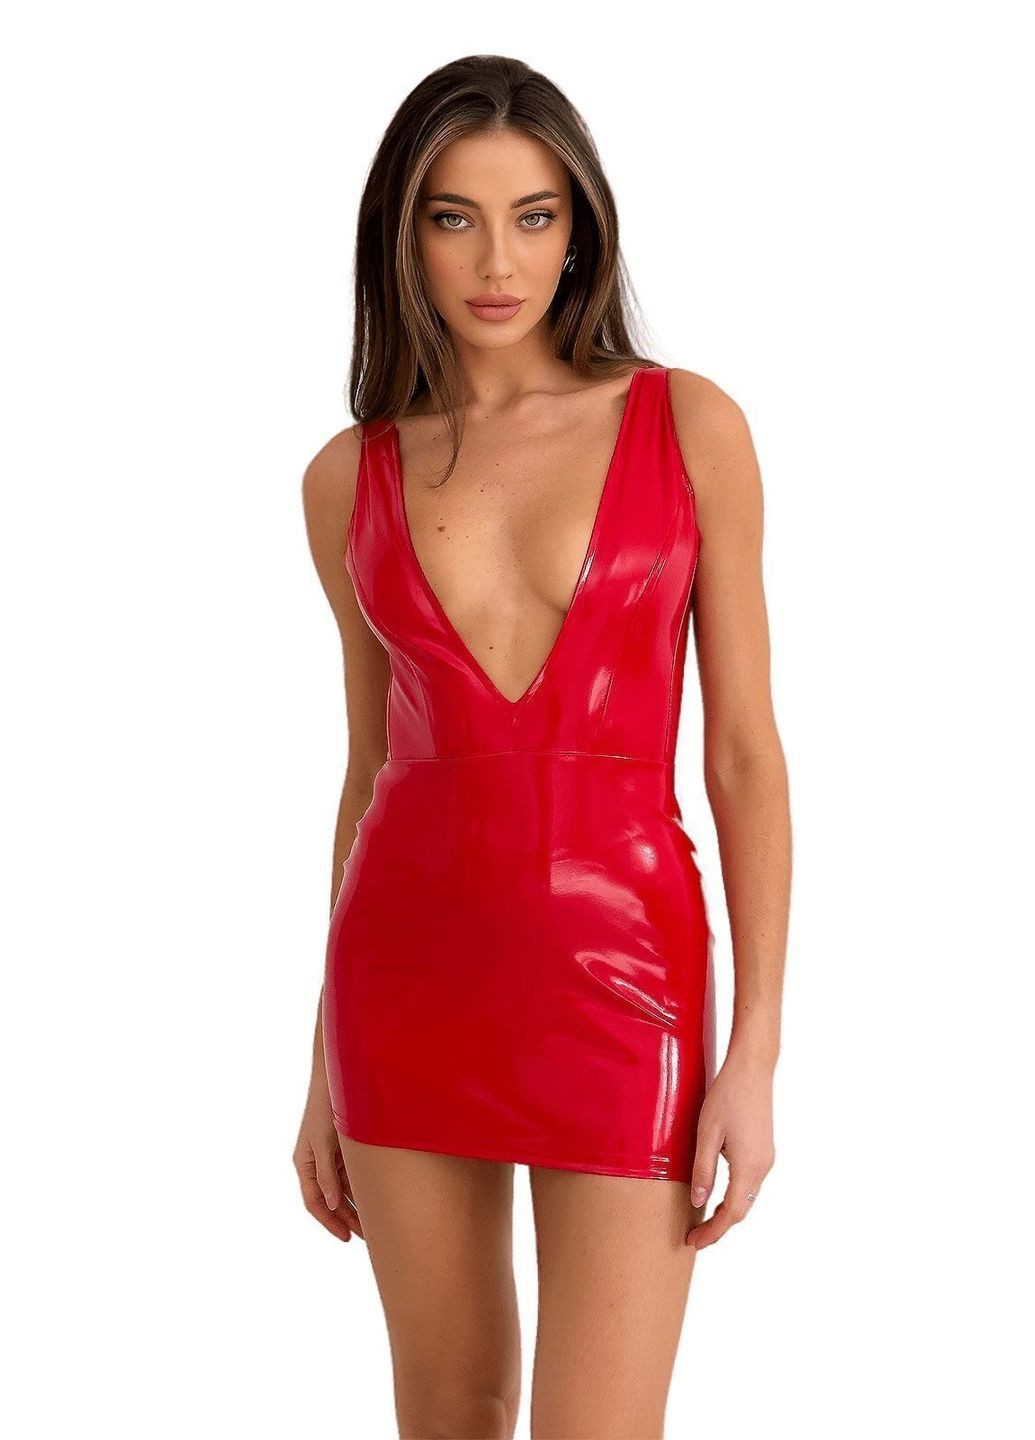 Червоний демісезонний лакована сукня із сексуальним декольте «промениста емілія»,, червона D&A